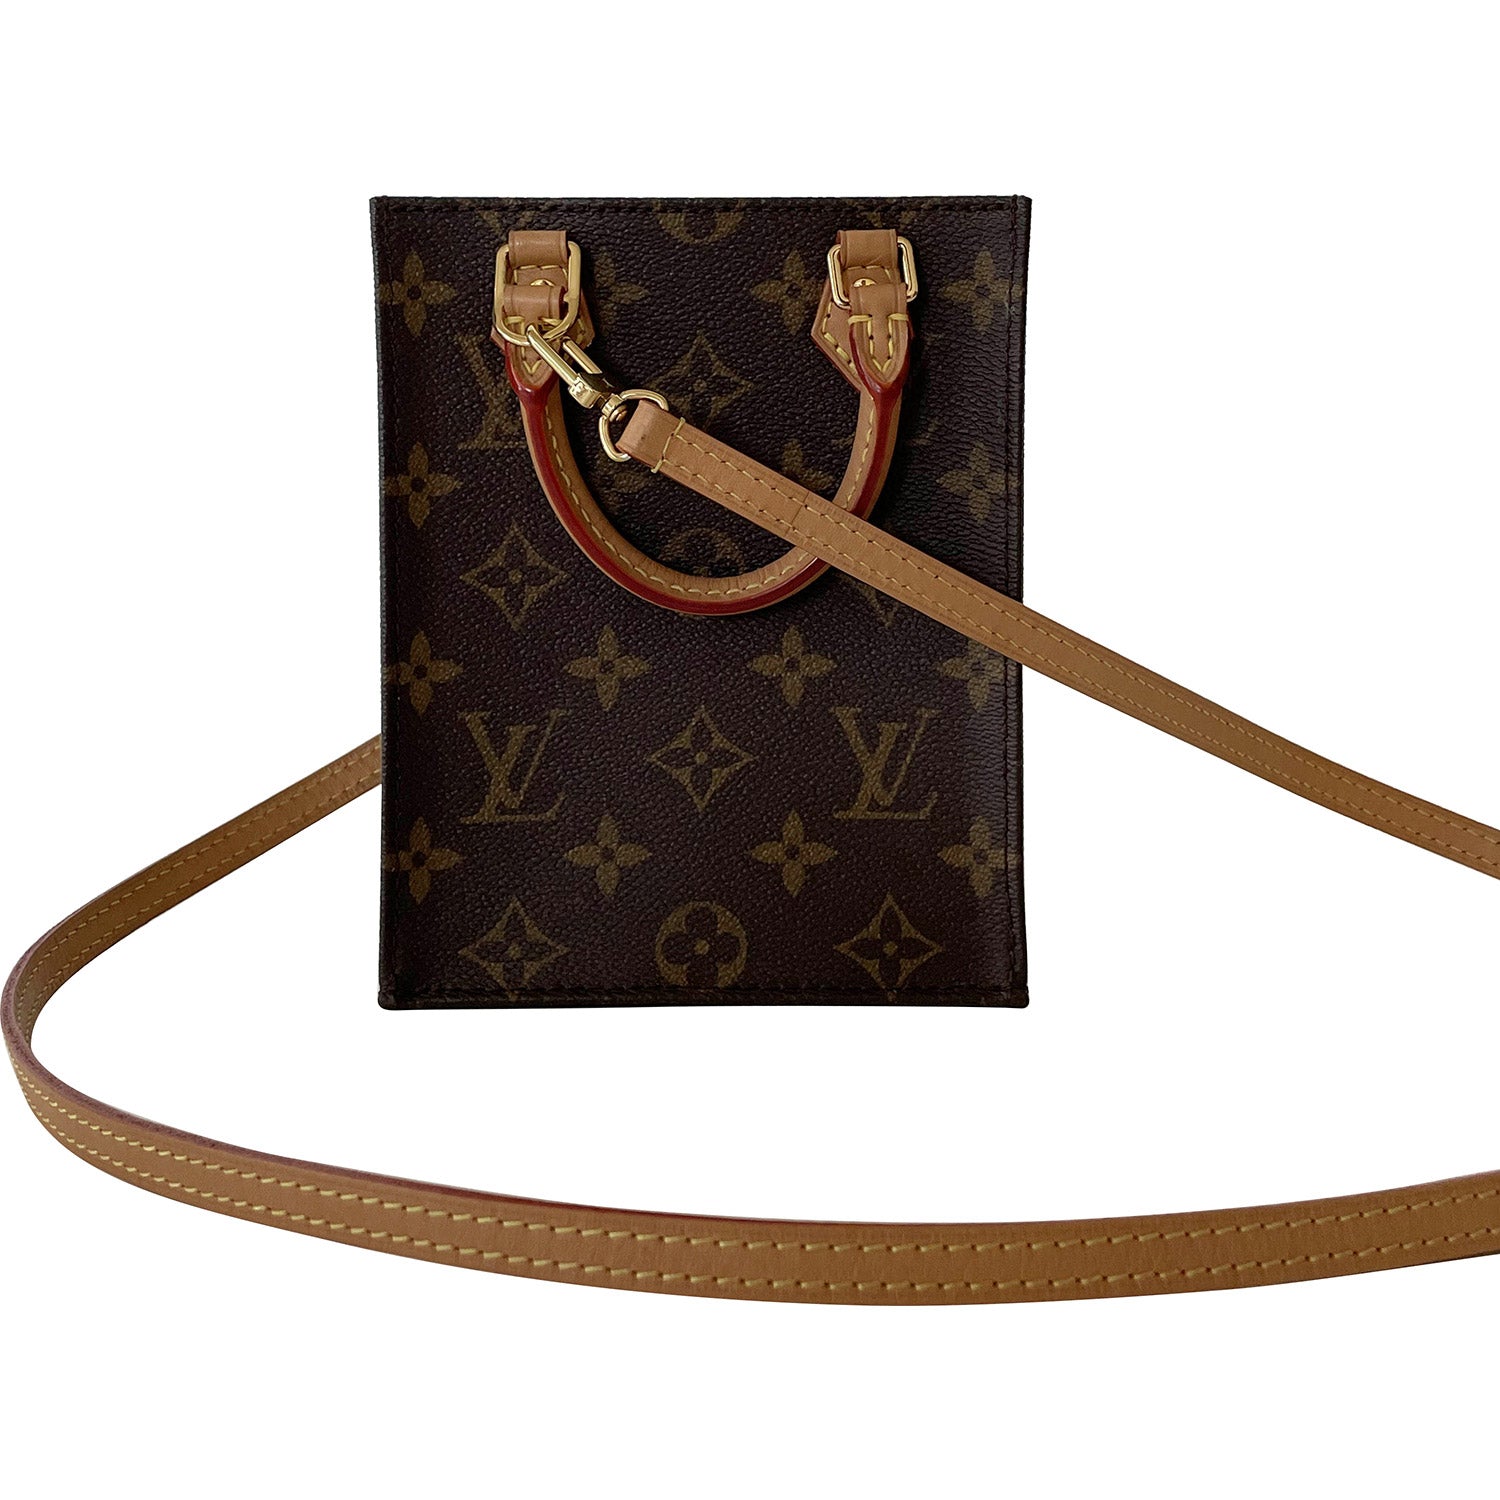 Shop authentic Louis Vuitton Monogram Petit Sac Plat at revogue for just  USD 1,950.00